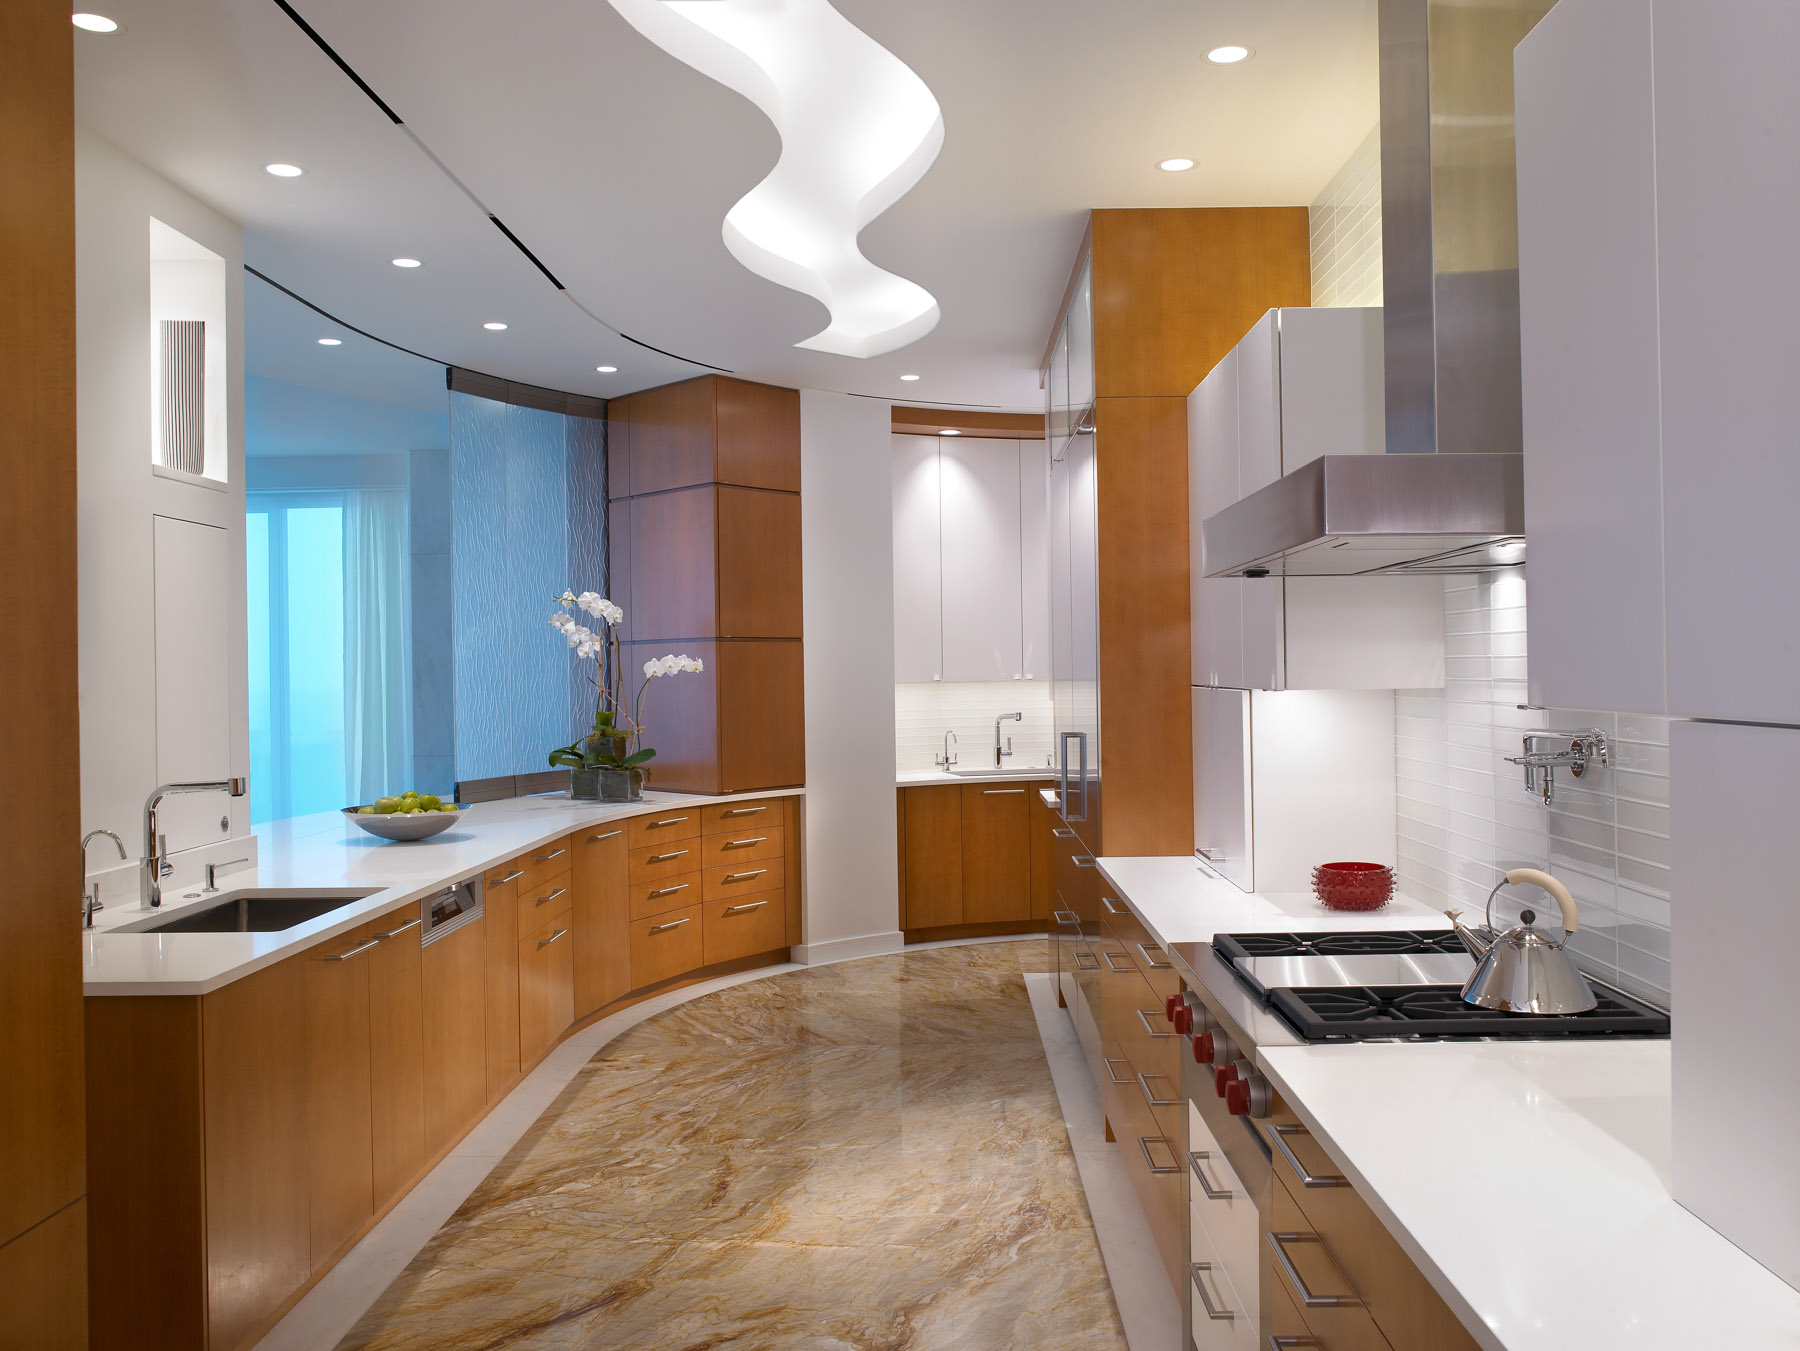 Какой потолок лучше сделать на кухне в квартире: Какой потолок лучше сделать на кухне: Эксперт рекомендует